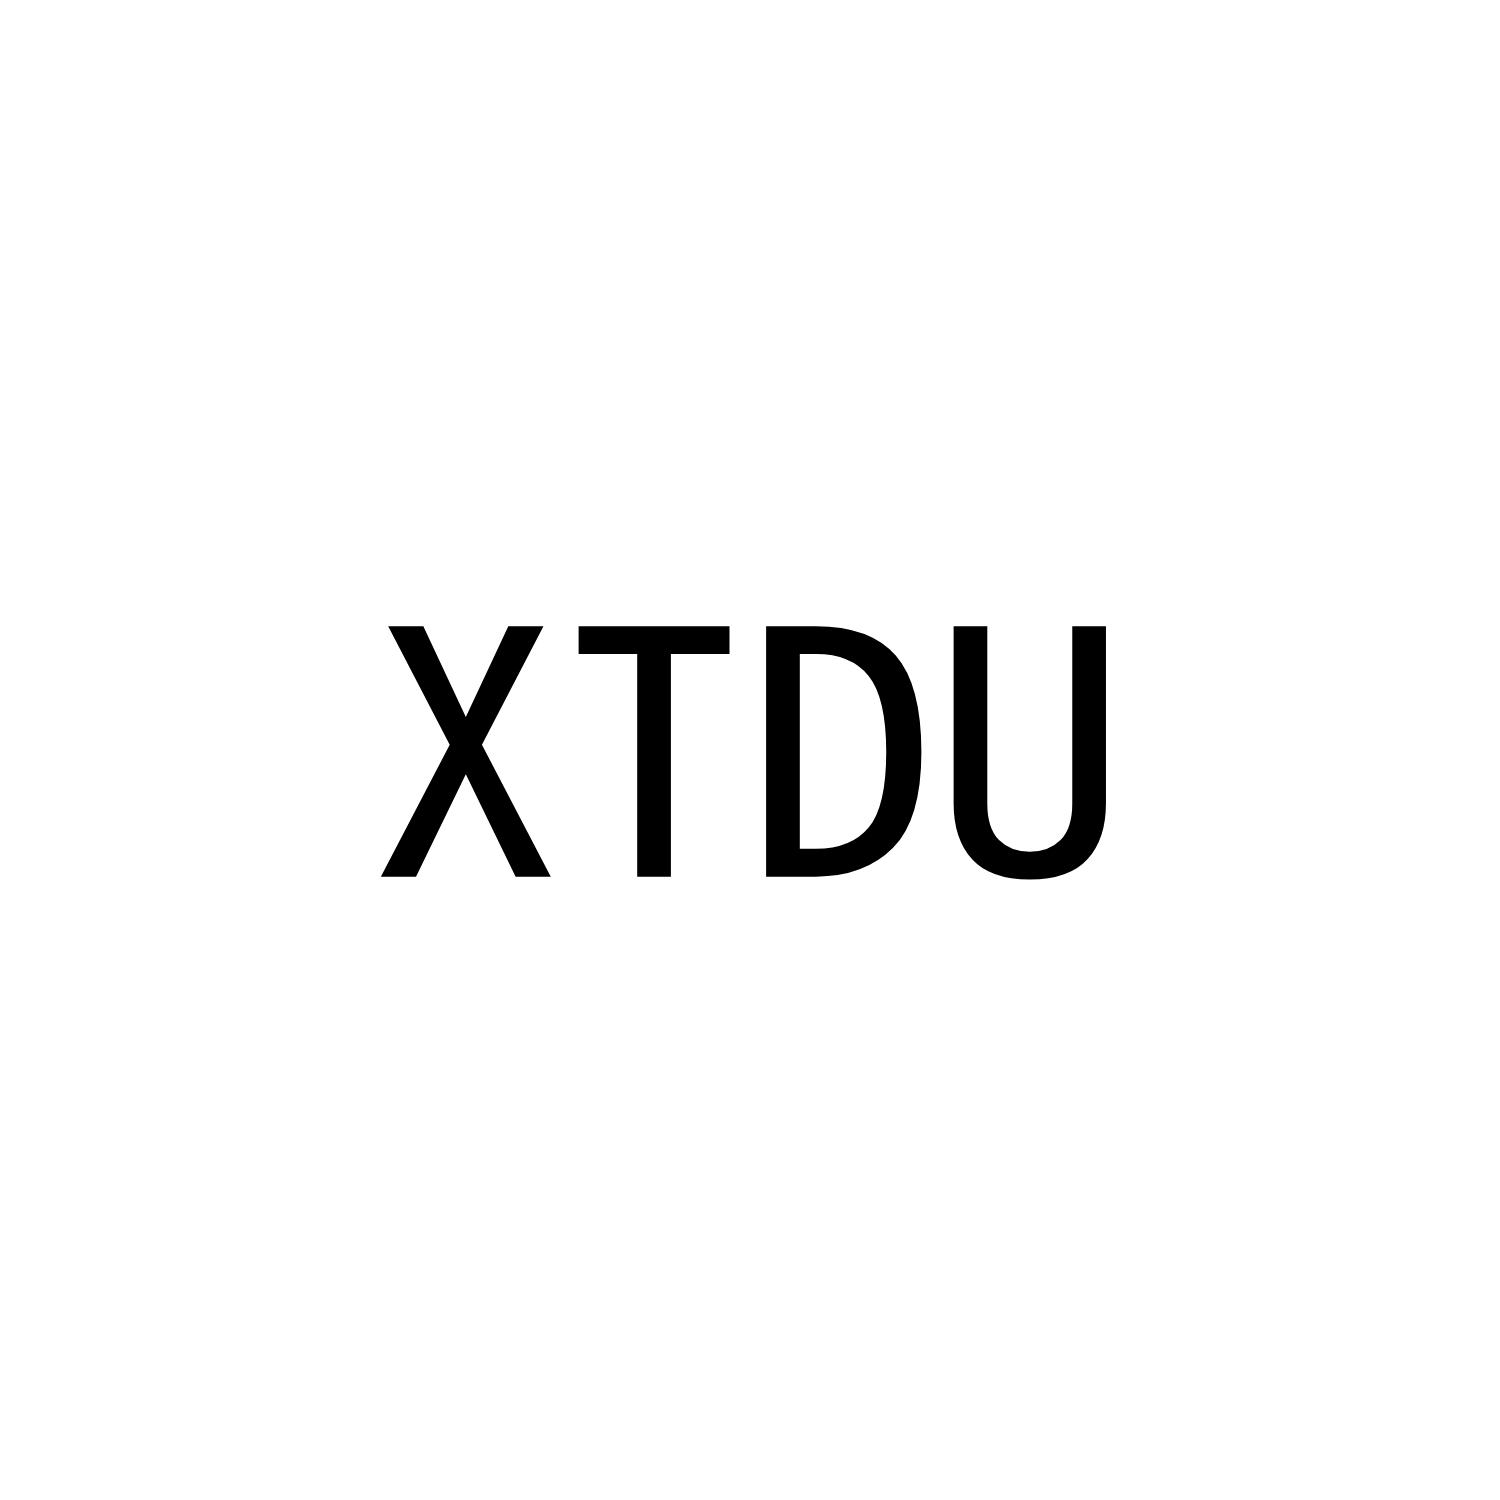 XTDU